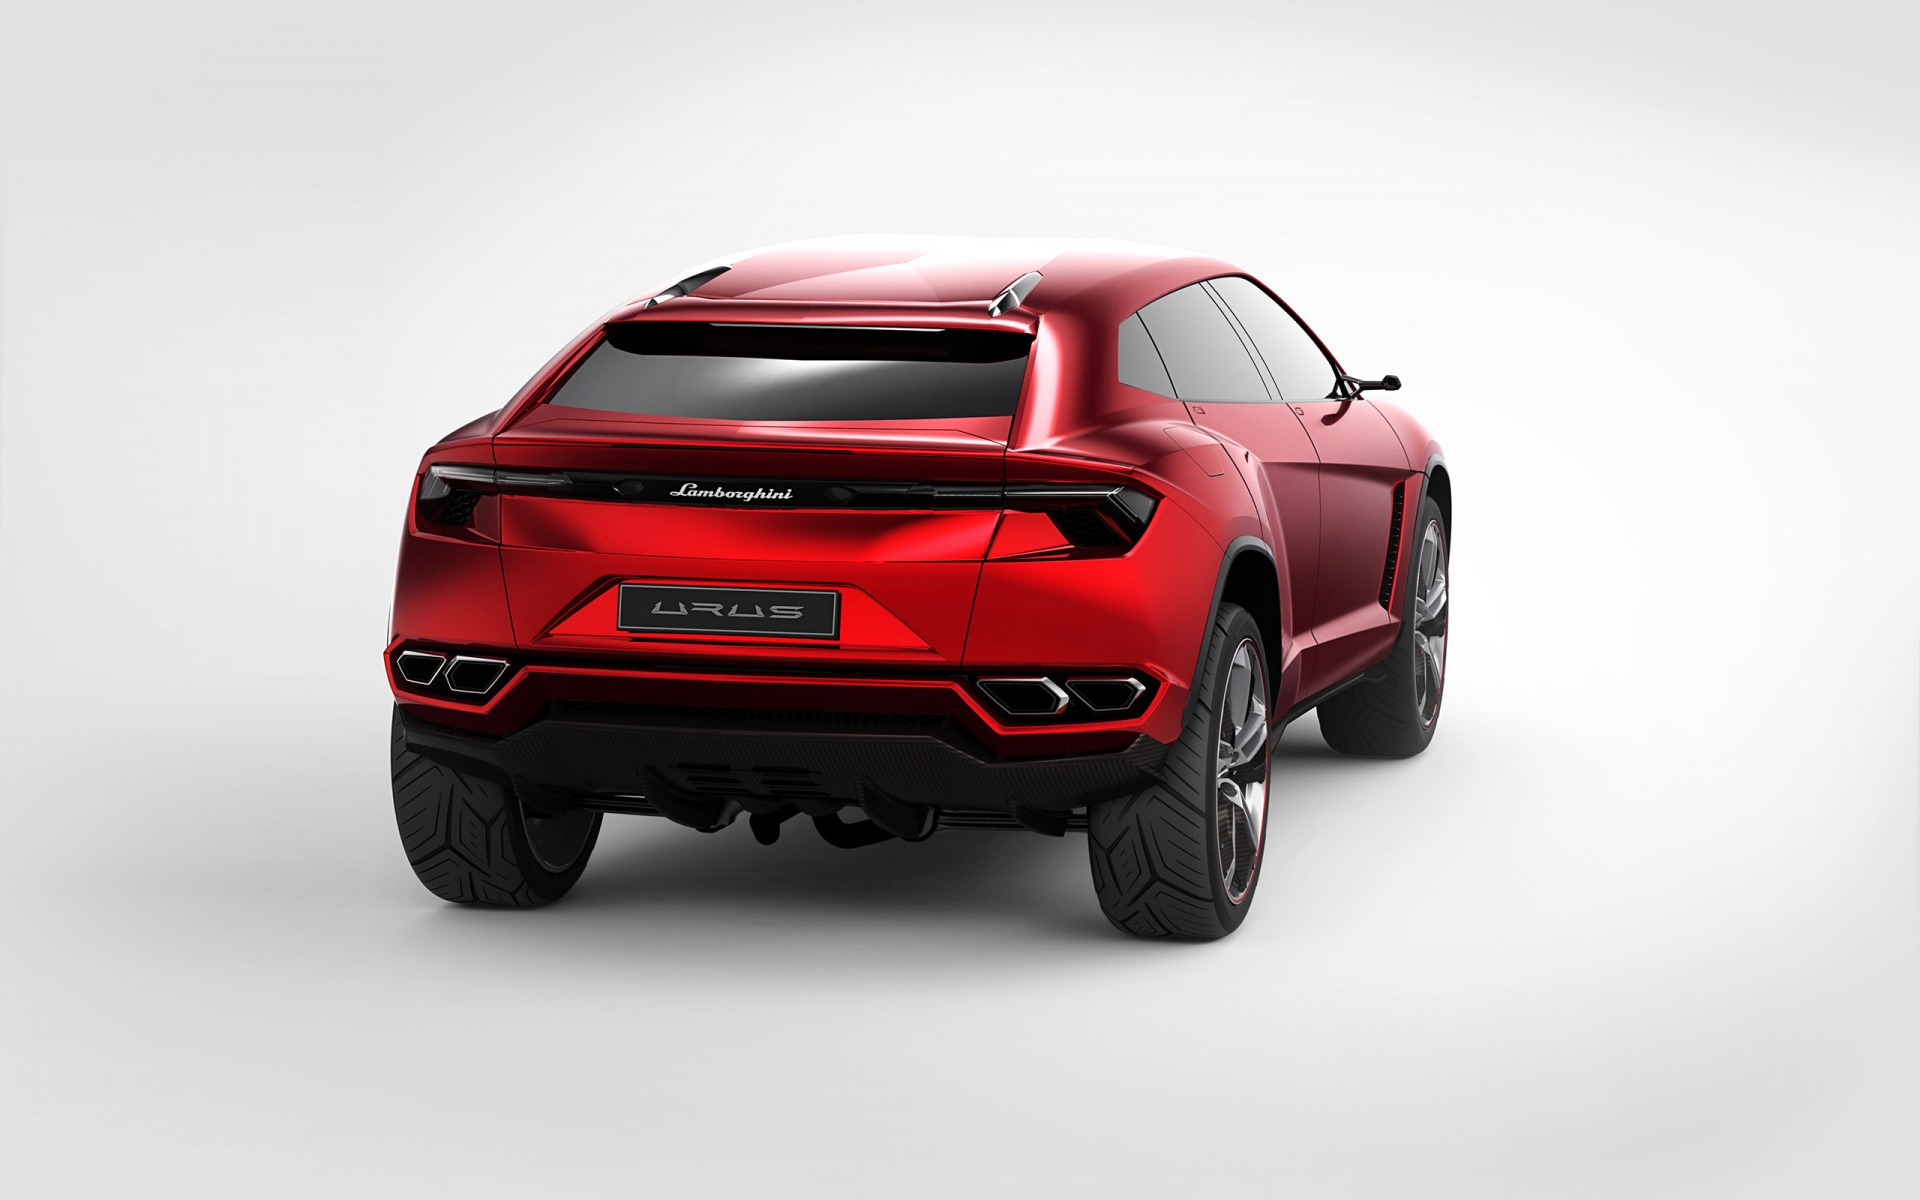 Lamborghini Urus Concept Rear Studio for 1920 x 1200 widescreen resolution